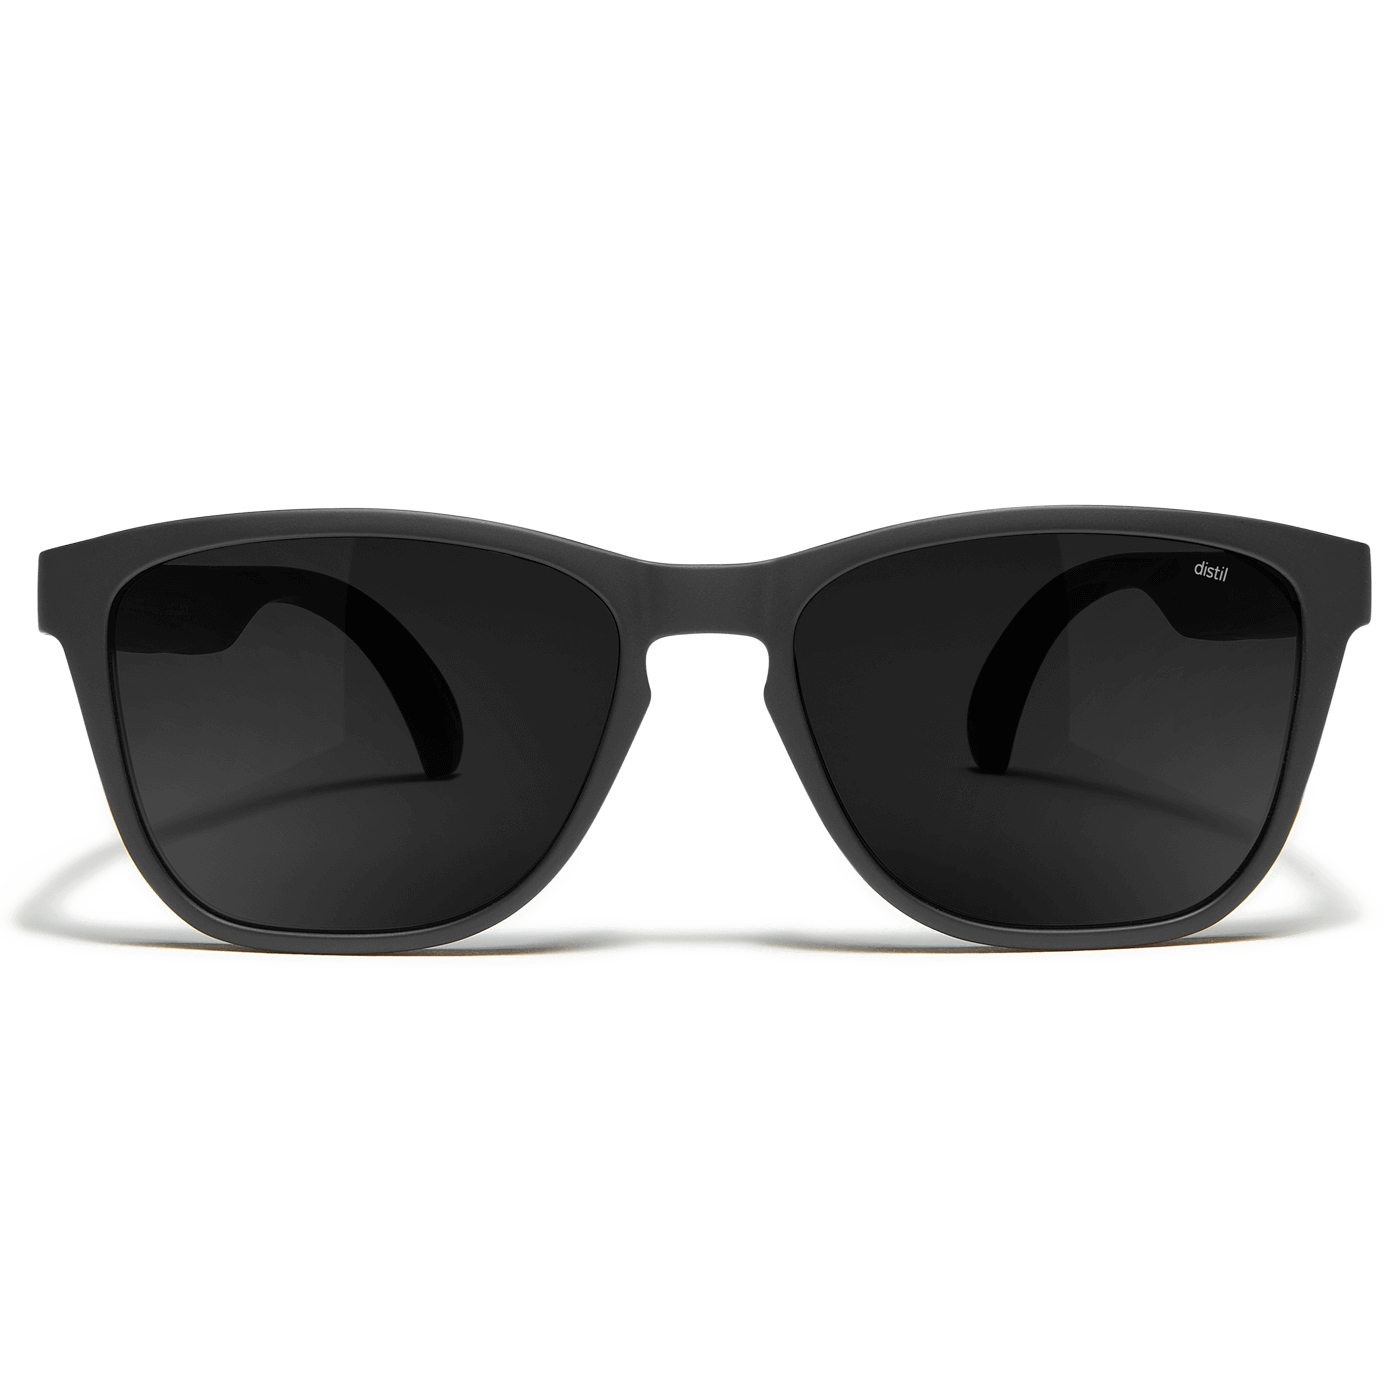 Noisette Sunglasses